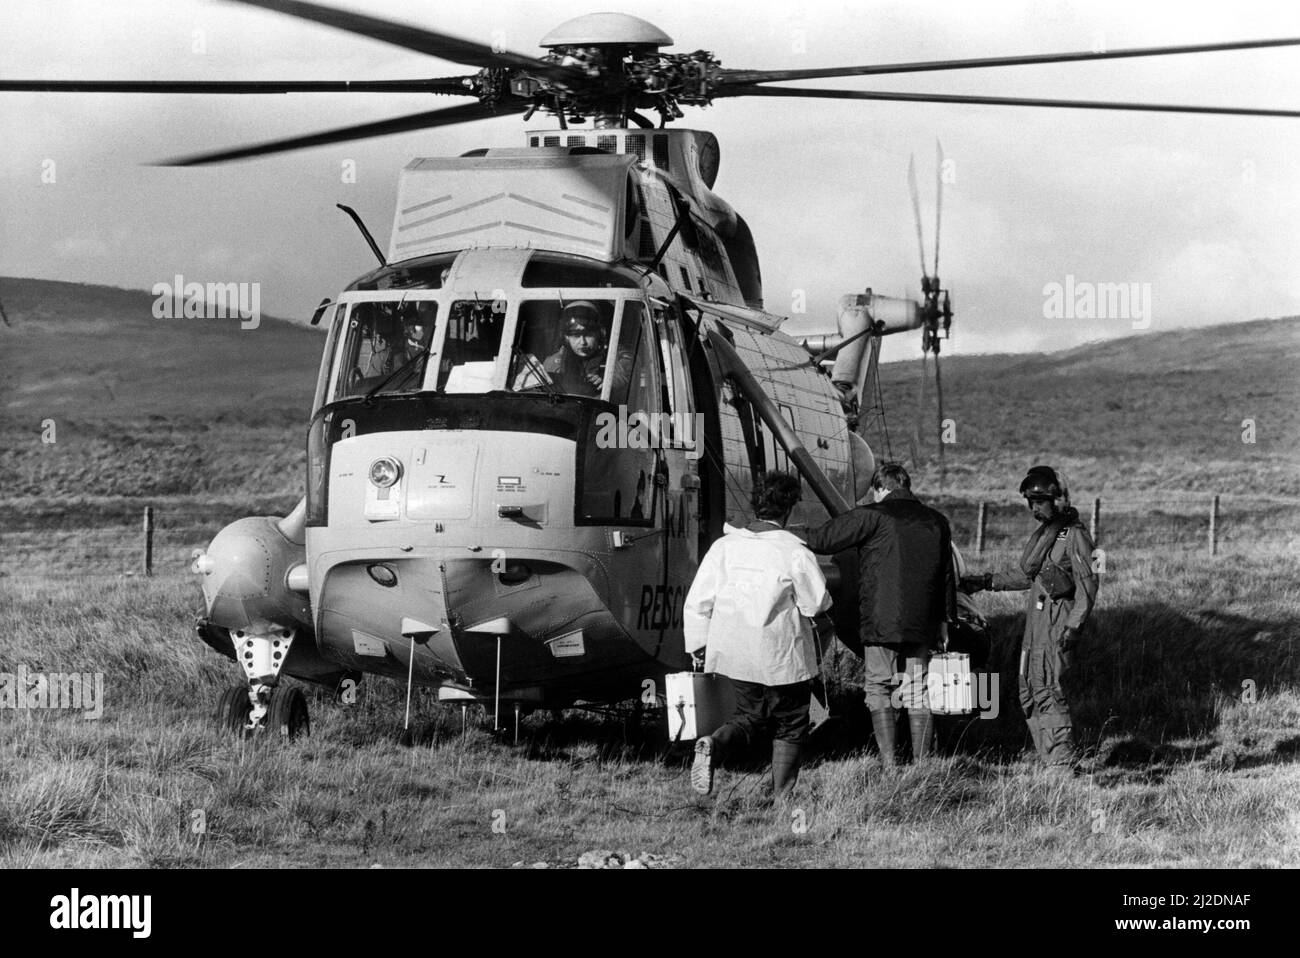 Ein Hubschrauber der RAF durchsucht und rettet Westland Sea King, der Polizeibeamte zu einem Unfallort bringt. Zwei Flugzeuge der RAF Jaguar von RAF Coltishall waren in der Luft während der niedrigen Flugübungen über Cumbria zusammengestoßen. Einer der Piloten wurde getötet, während der andere den Unfall überlebte. 07/10/1985 Stockfoto